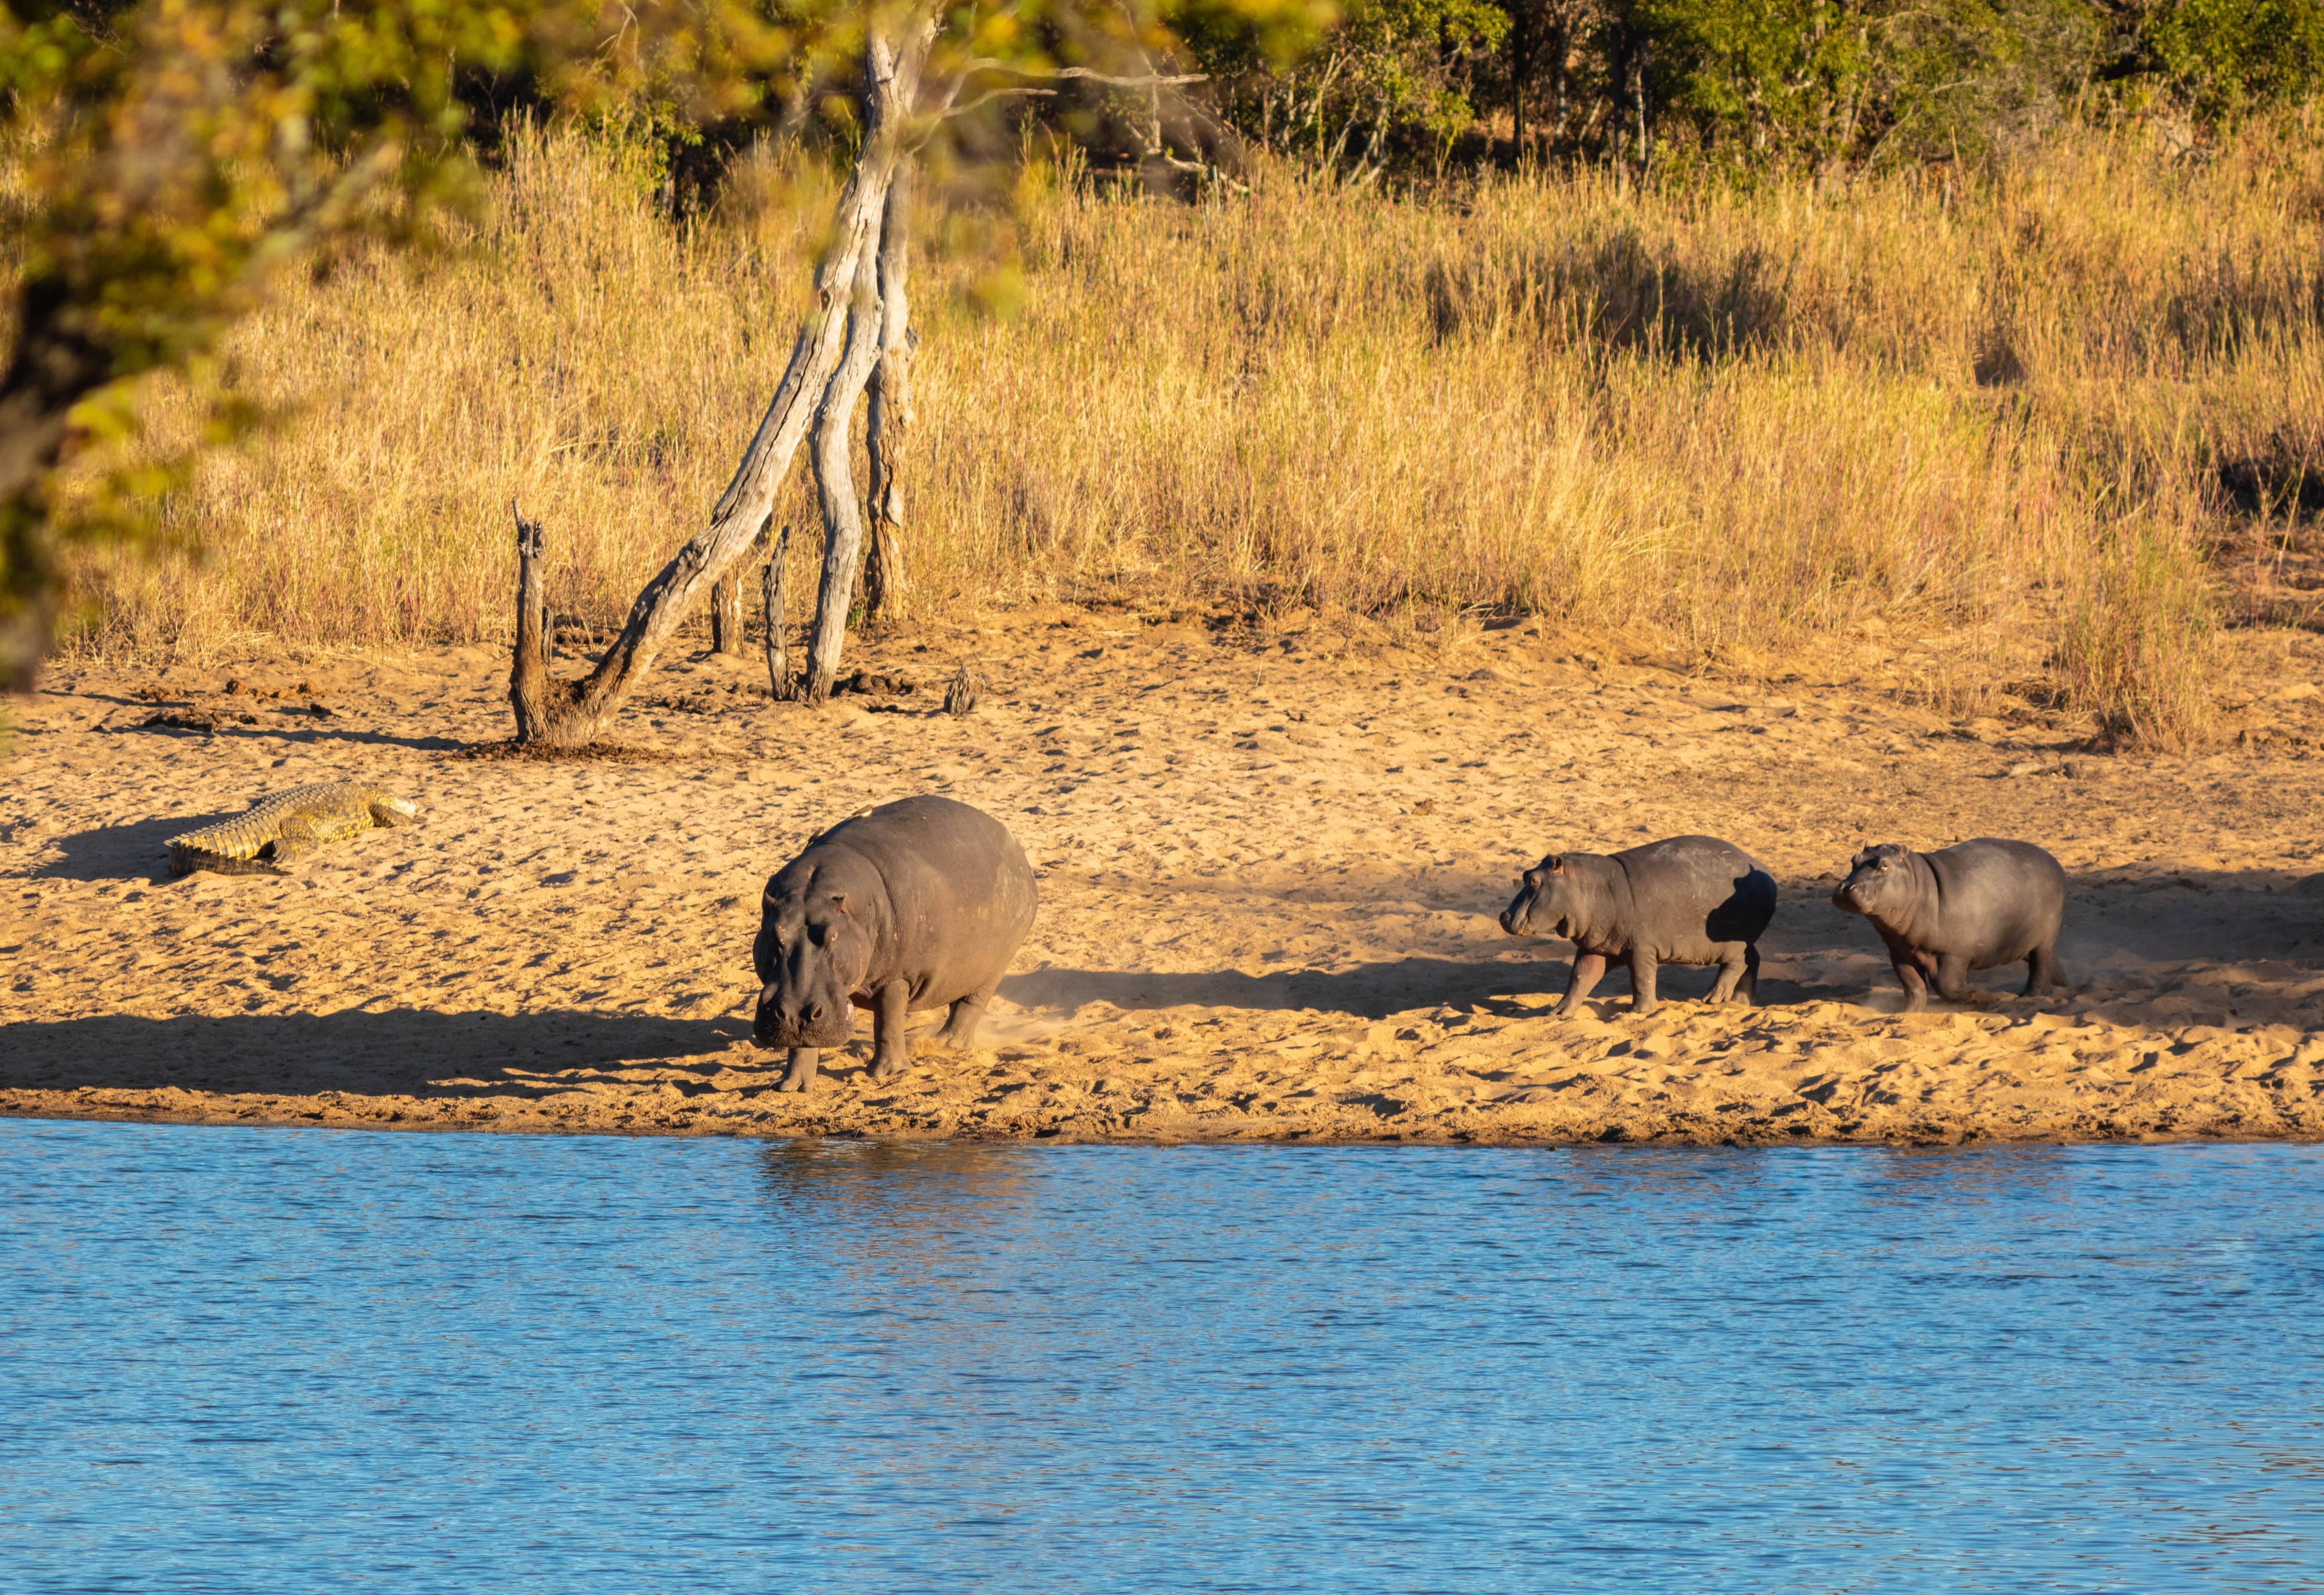 Hipopótamos comunes (Hippopotamus amphibius), parque nacional Kruger, Sudáfrica, 2018-07-24, DD 05